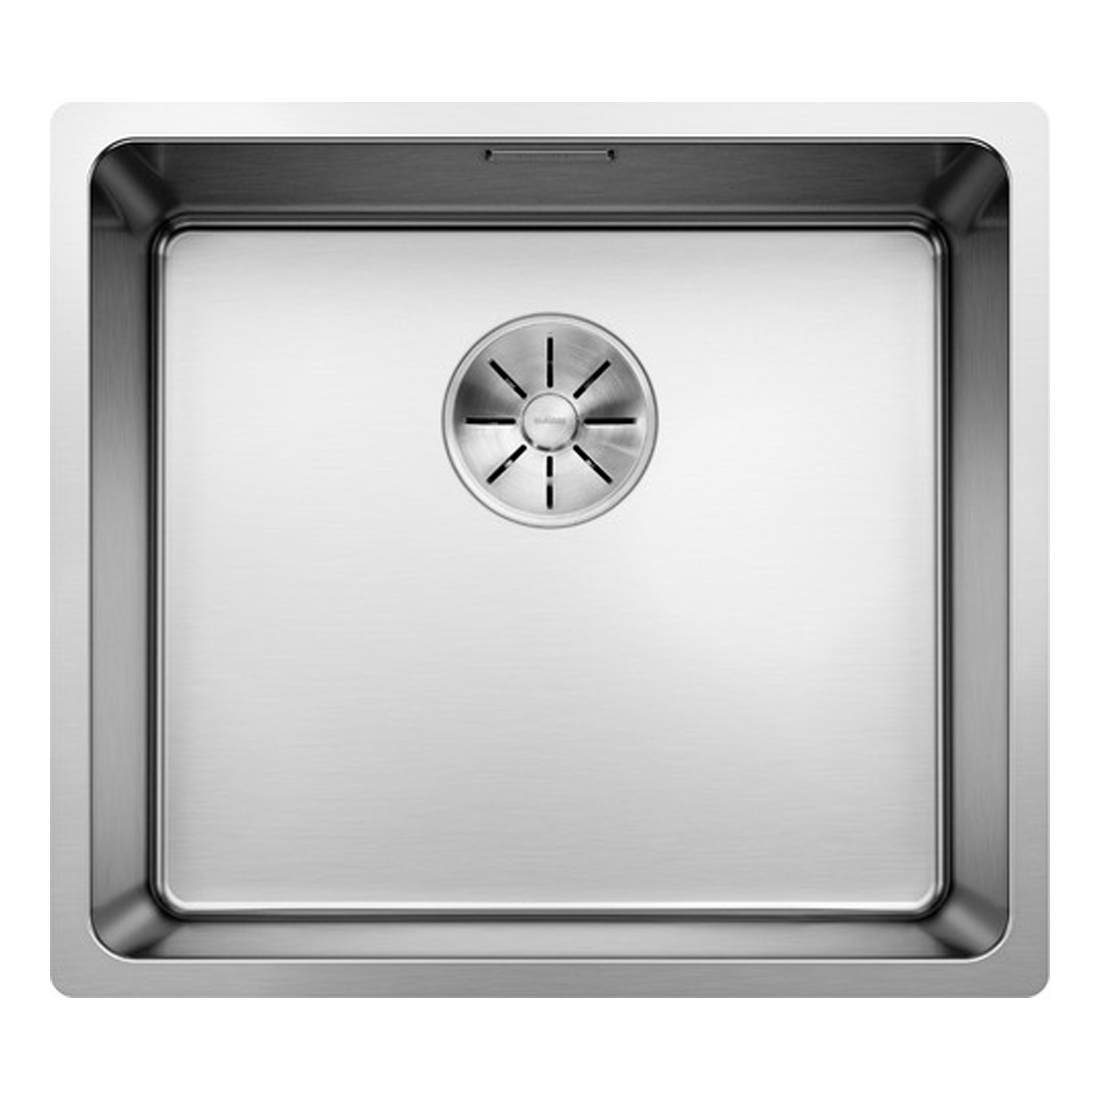 Кухонная мойка Blanco Andano 450-U полированная сталь кухонная мойка blanco andano 180 u полированная сталь